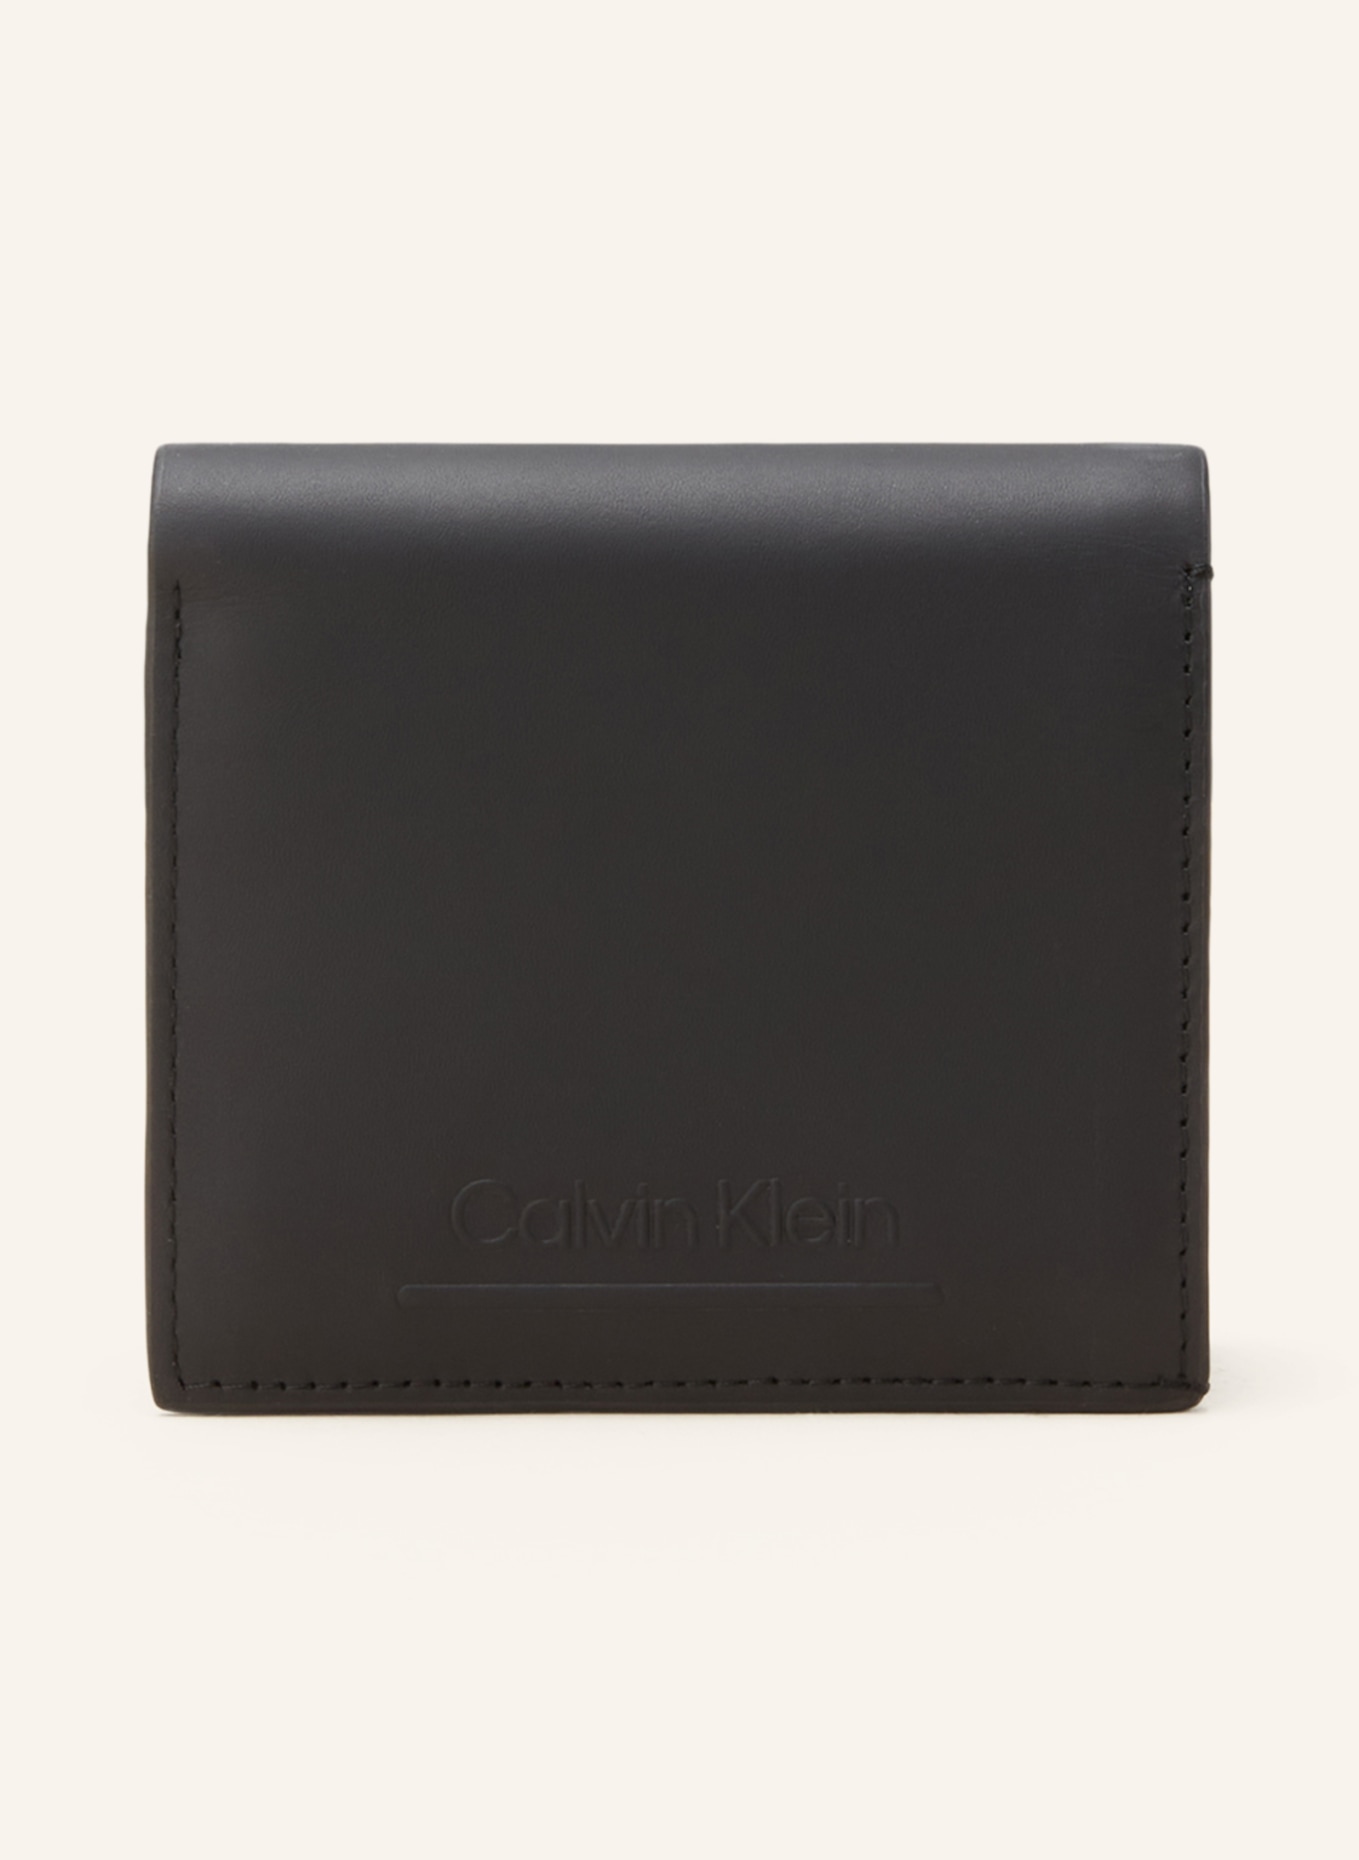 Calvin Klein Wallet, Color: BLACK (Image 1)